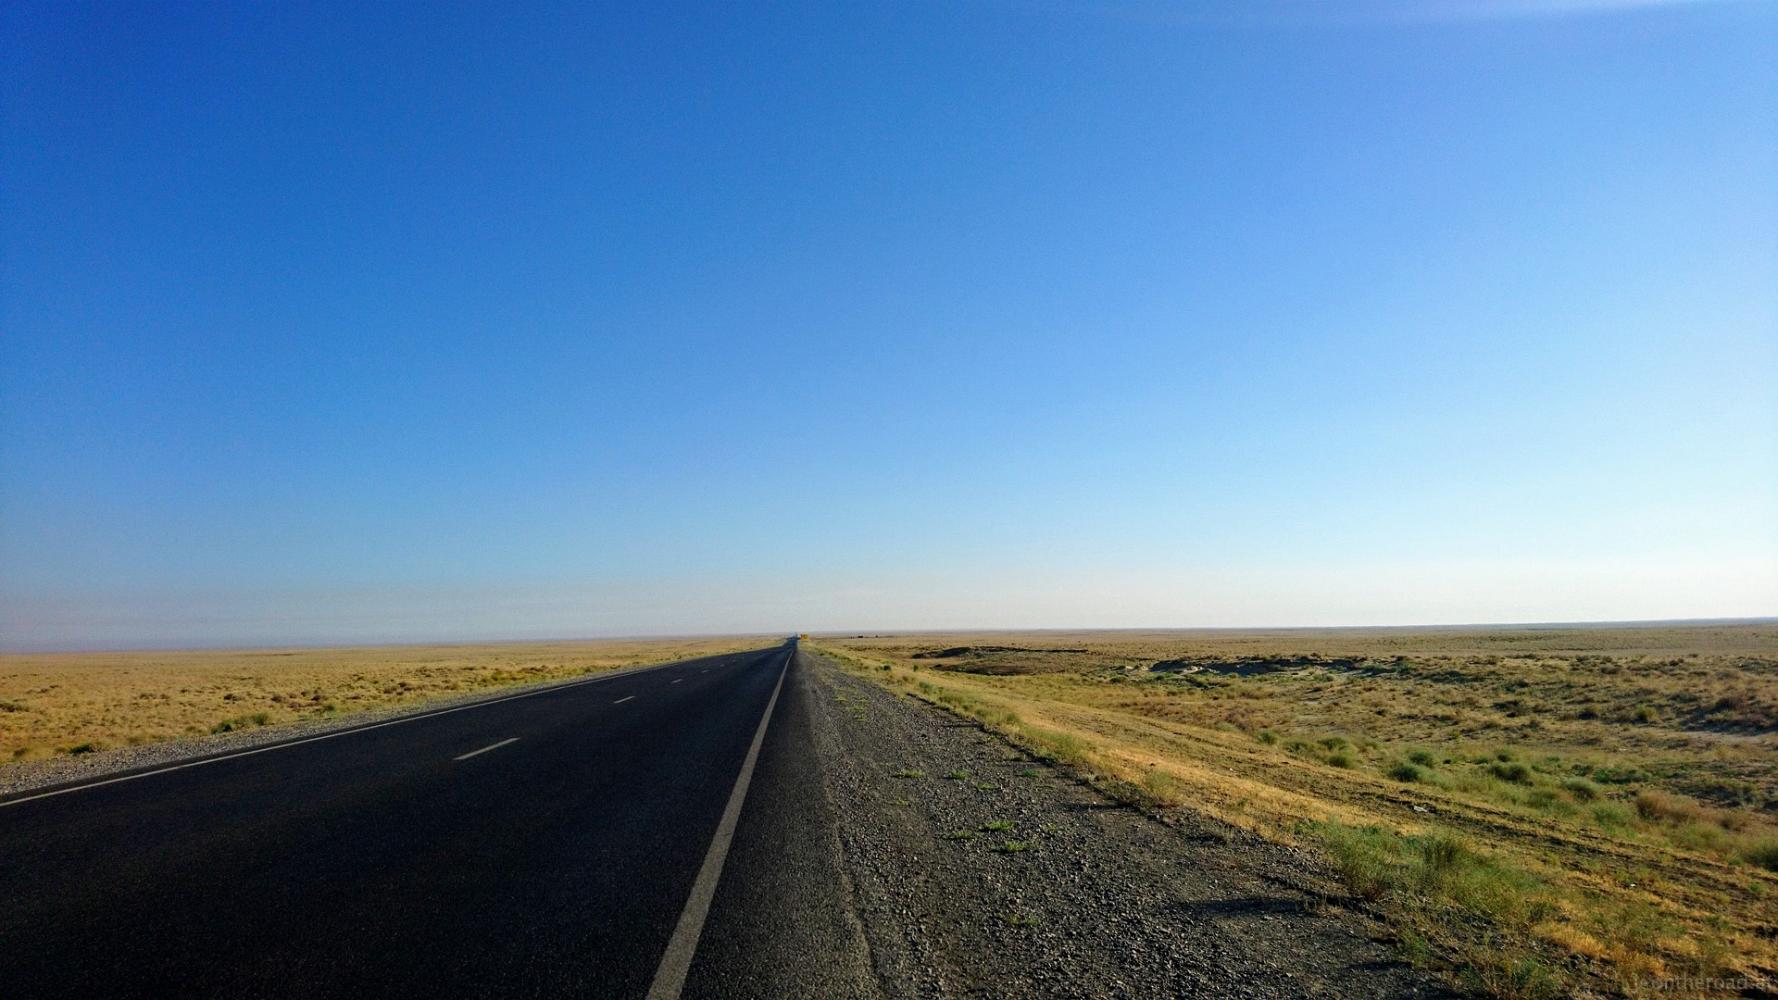 Kazakhstan – endless roads